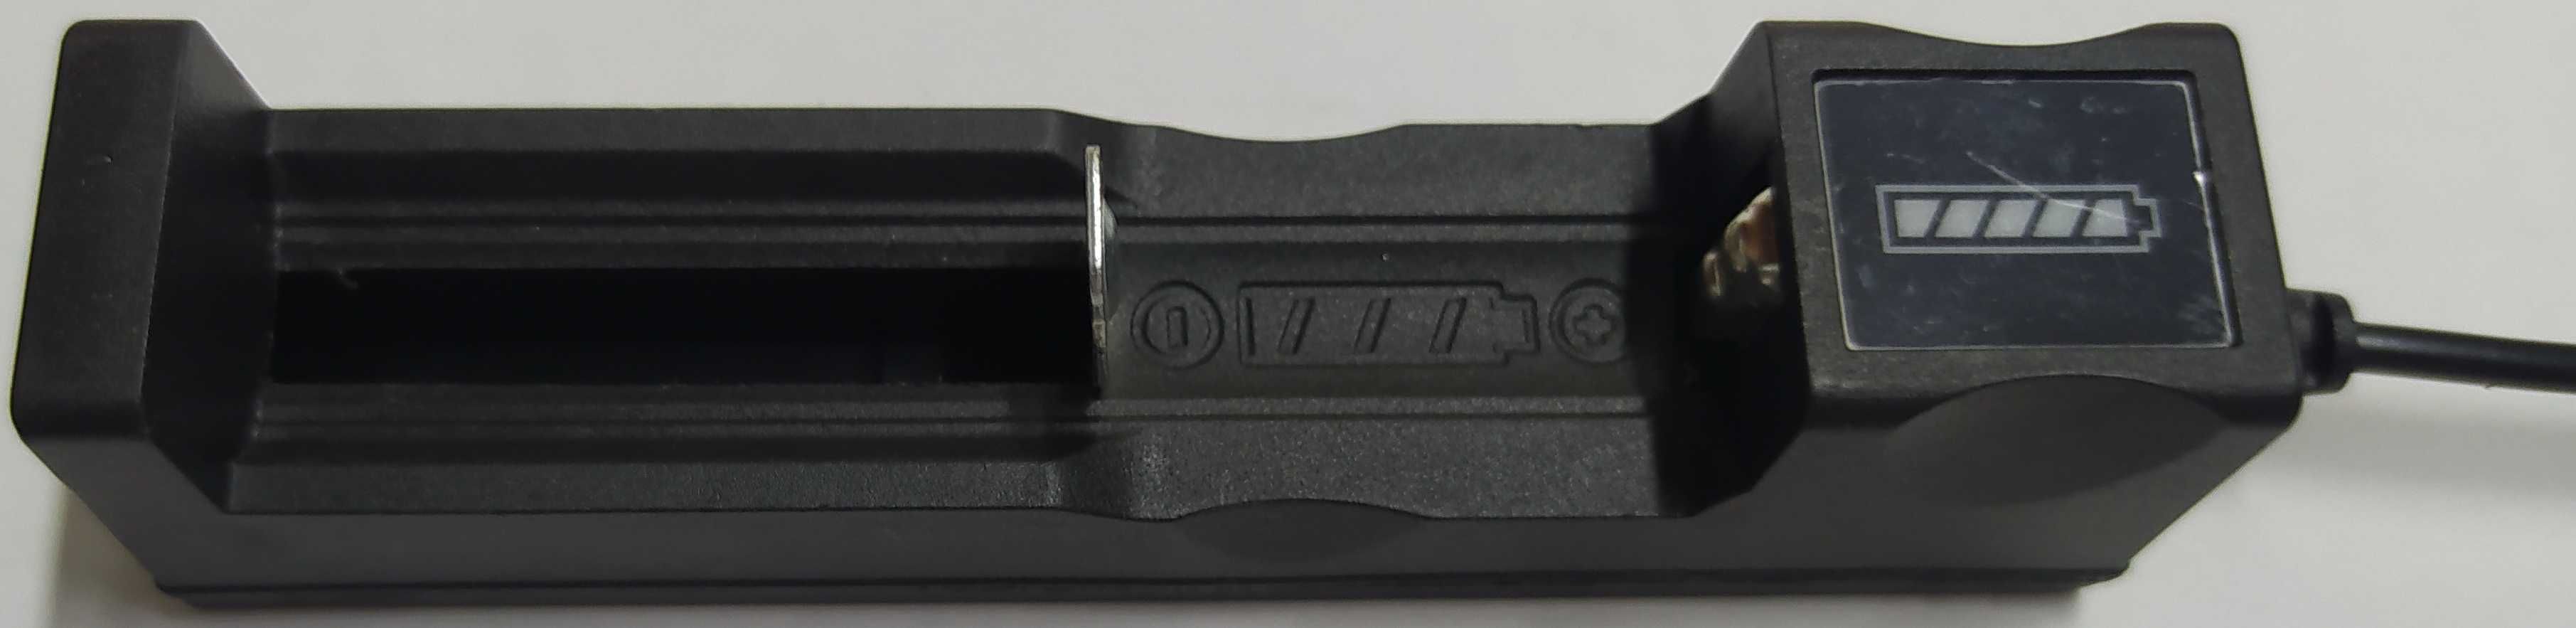 USB зарядка TG-188 для Li-ion аккумуляторов 18650